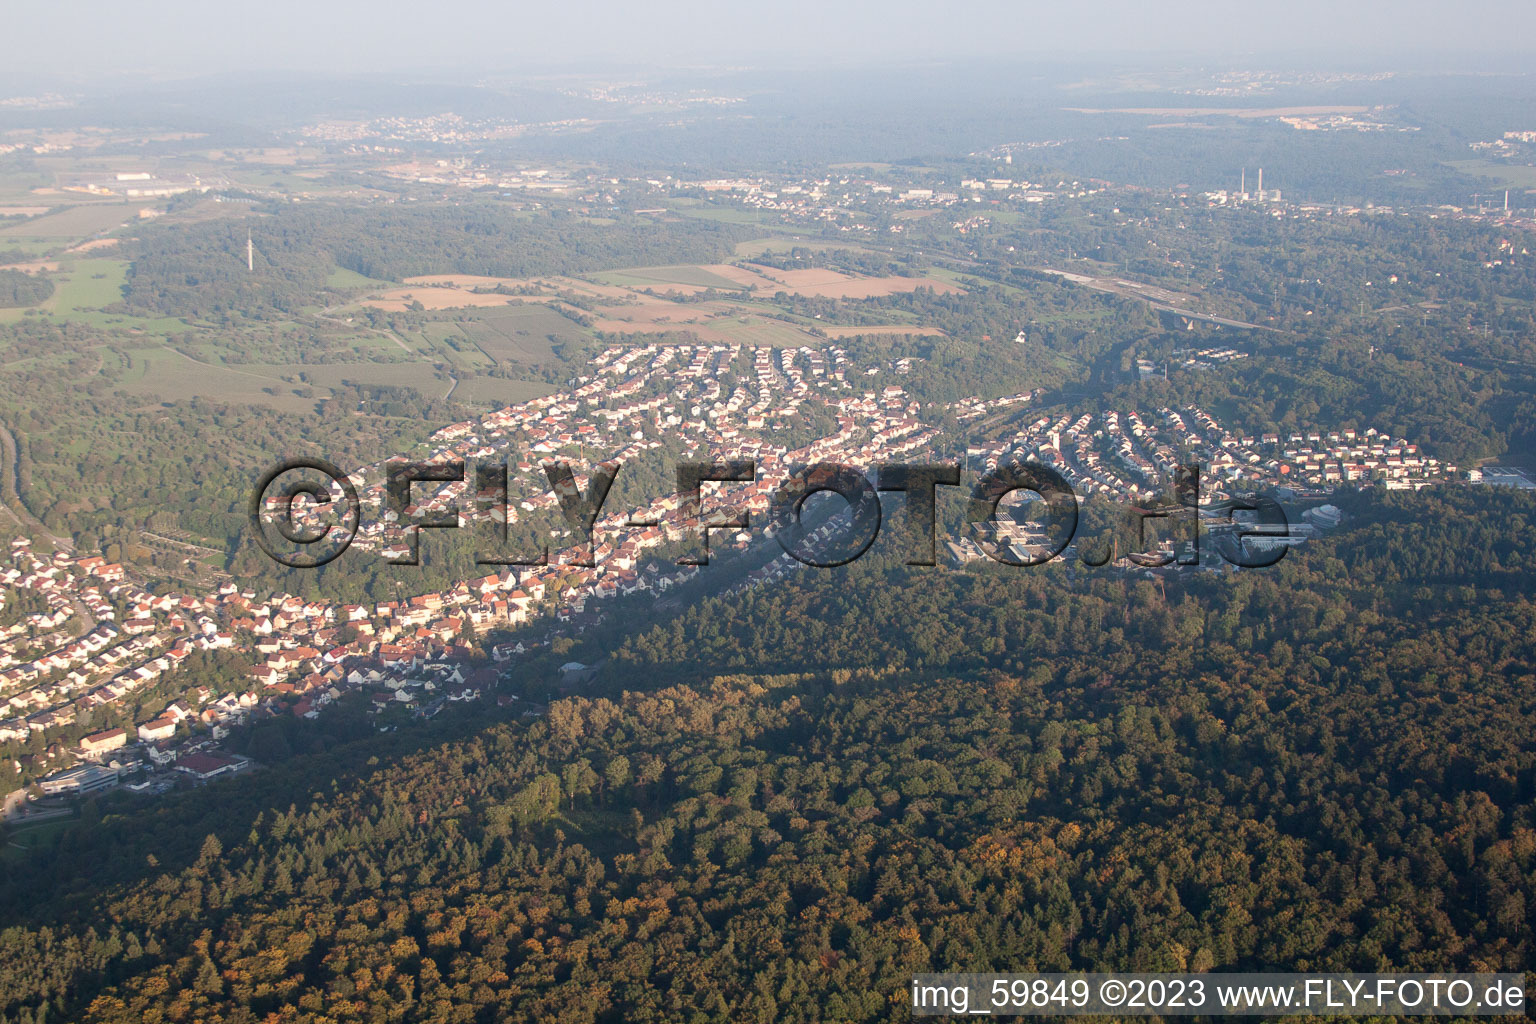 Ispringen im Bundesland Baden-Württemberg, Deutschland aus der Luft betrachtet